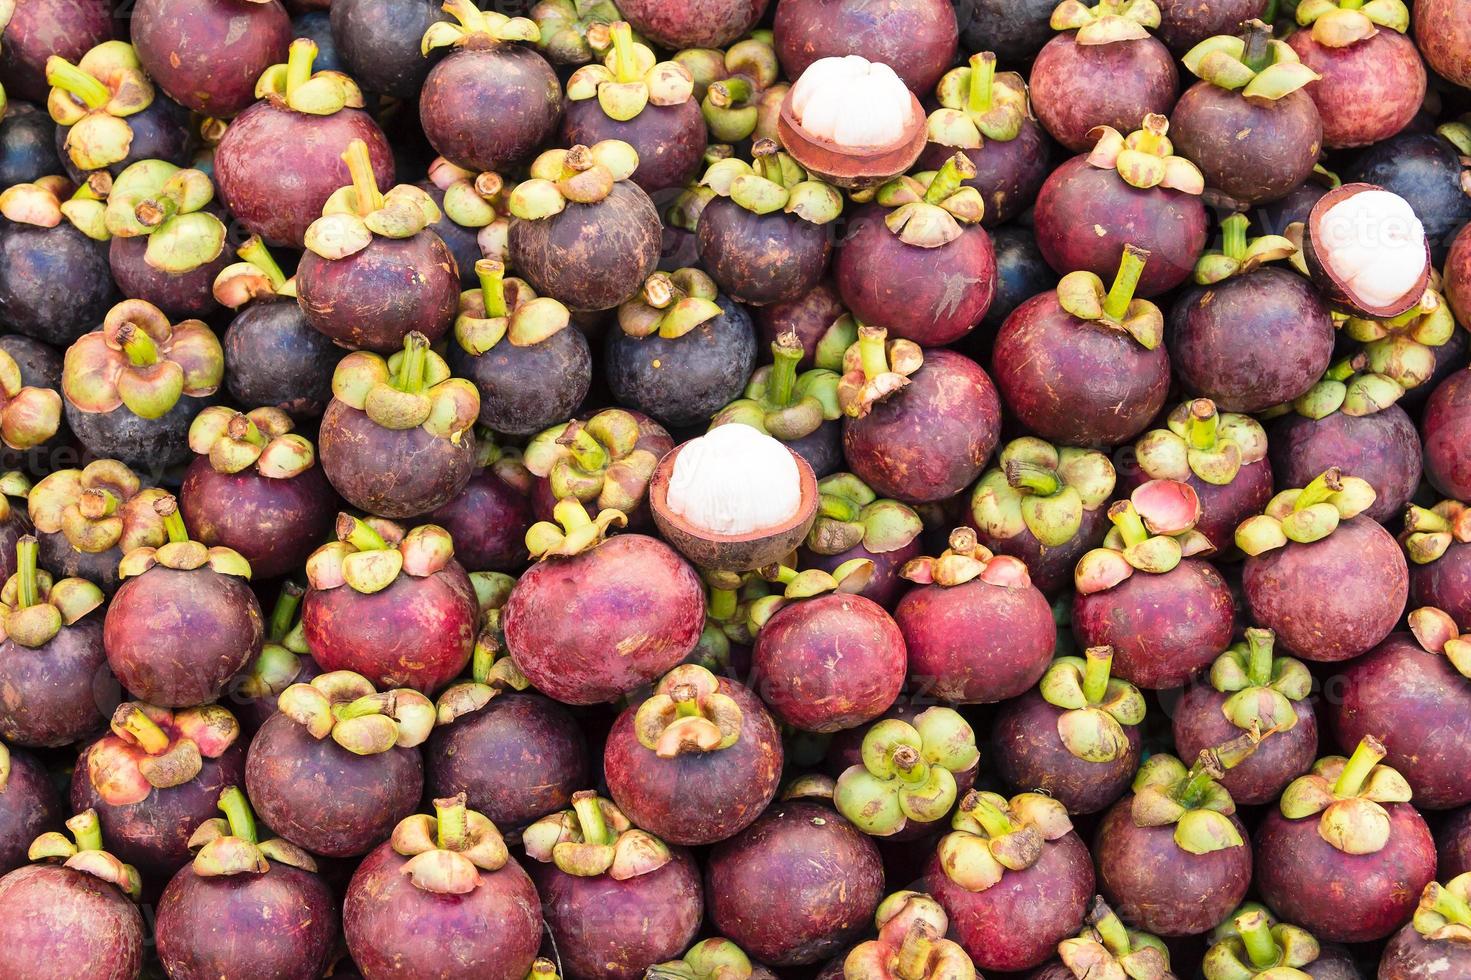 färsk mangostanfrukt på marknaden foto